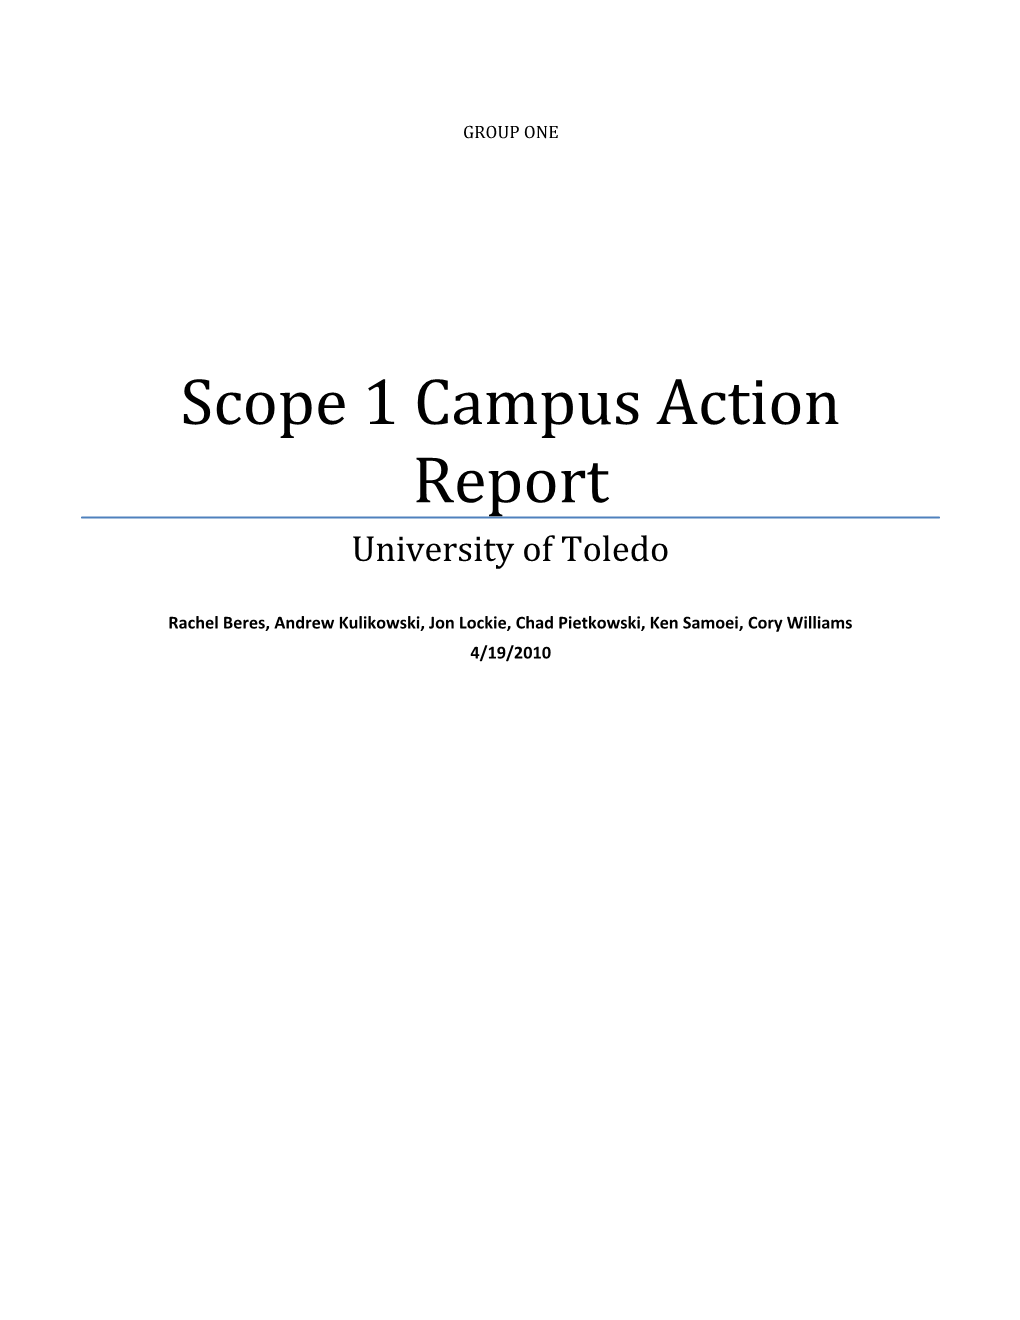 Scope 1 Campus Action Report